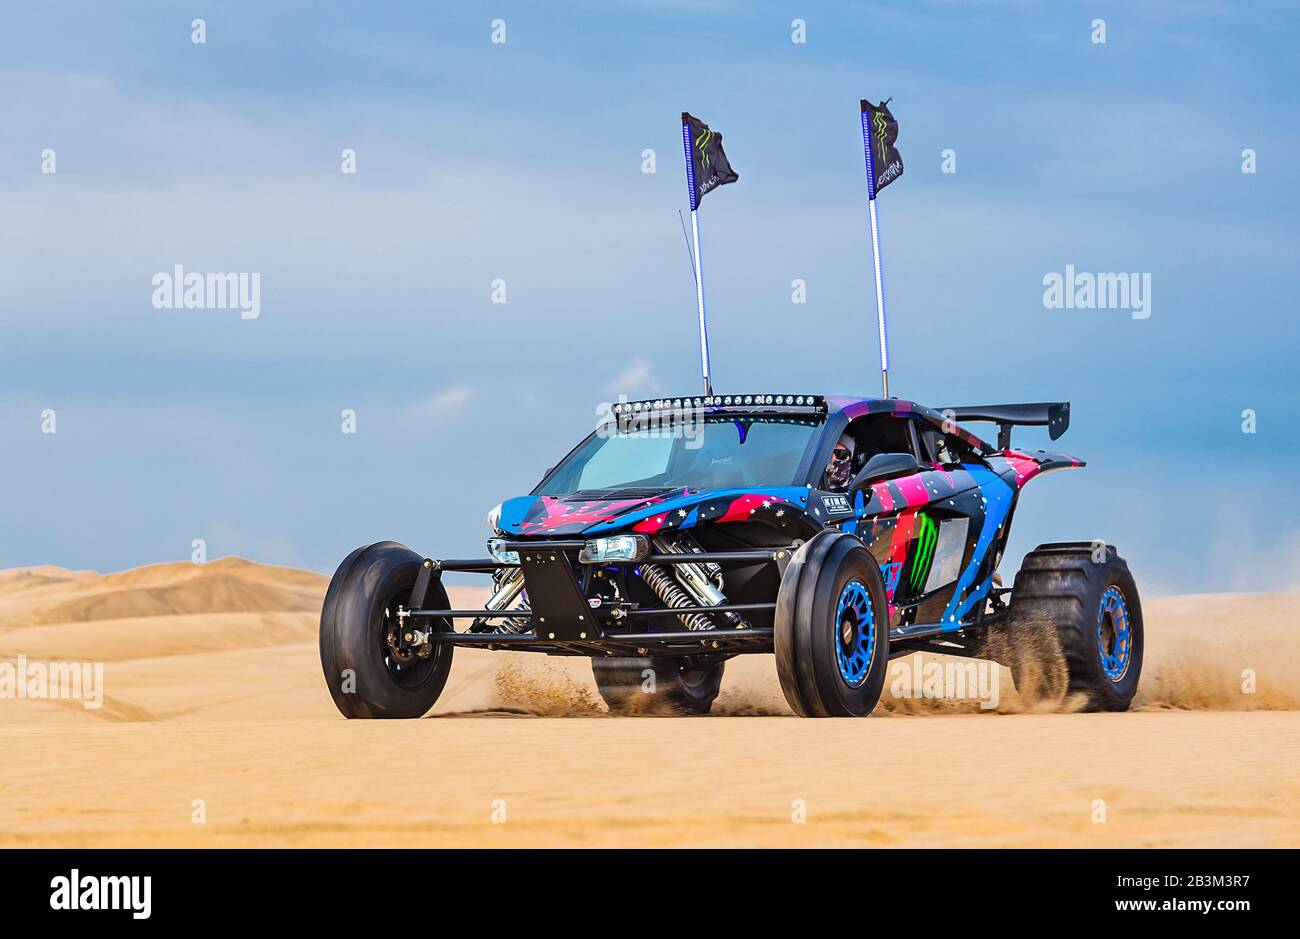 racing dune buggy